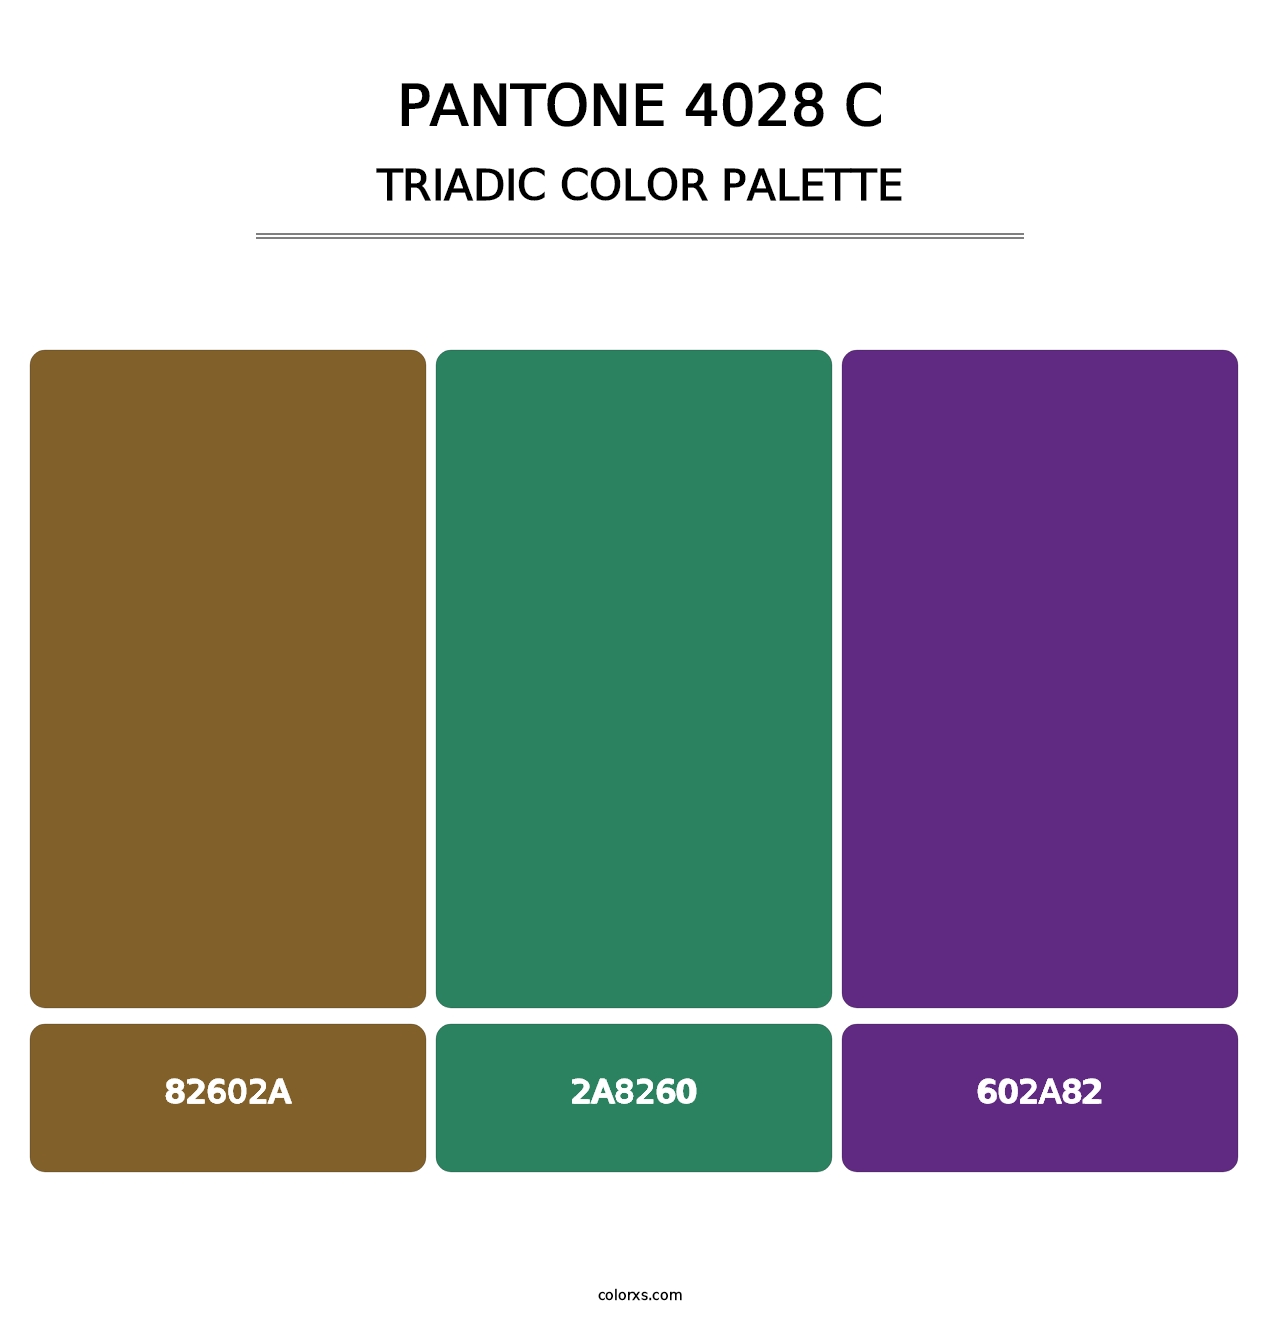 PANTONE 4028 C - Triadic Color Palette